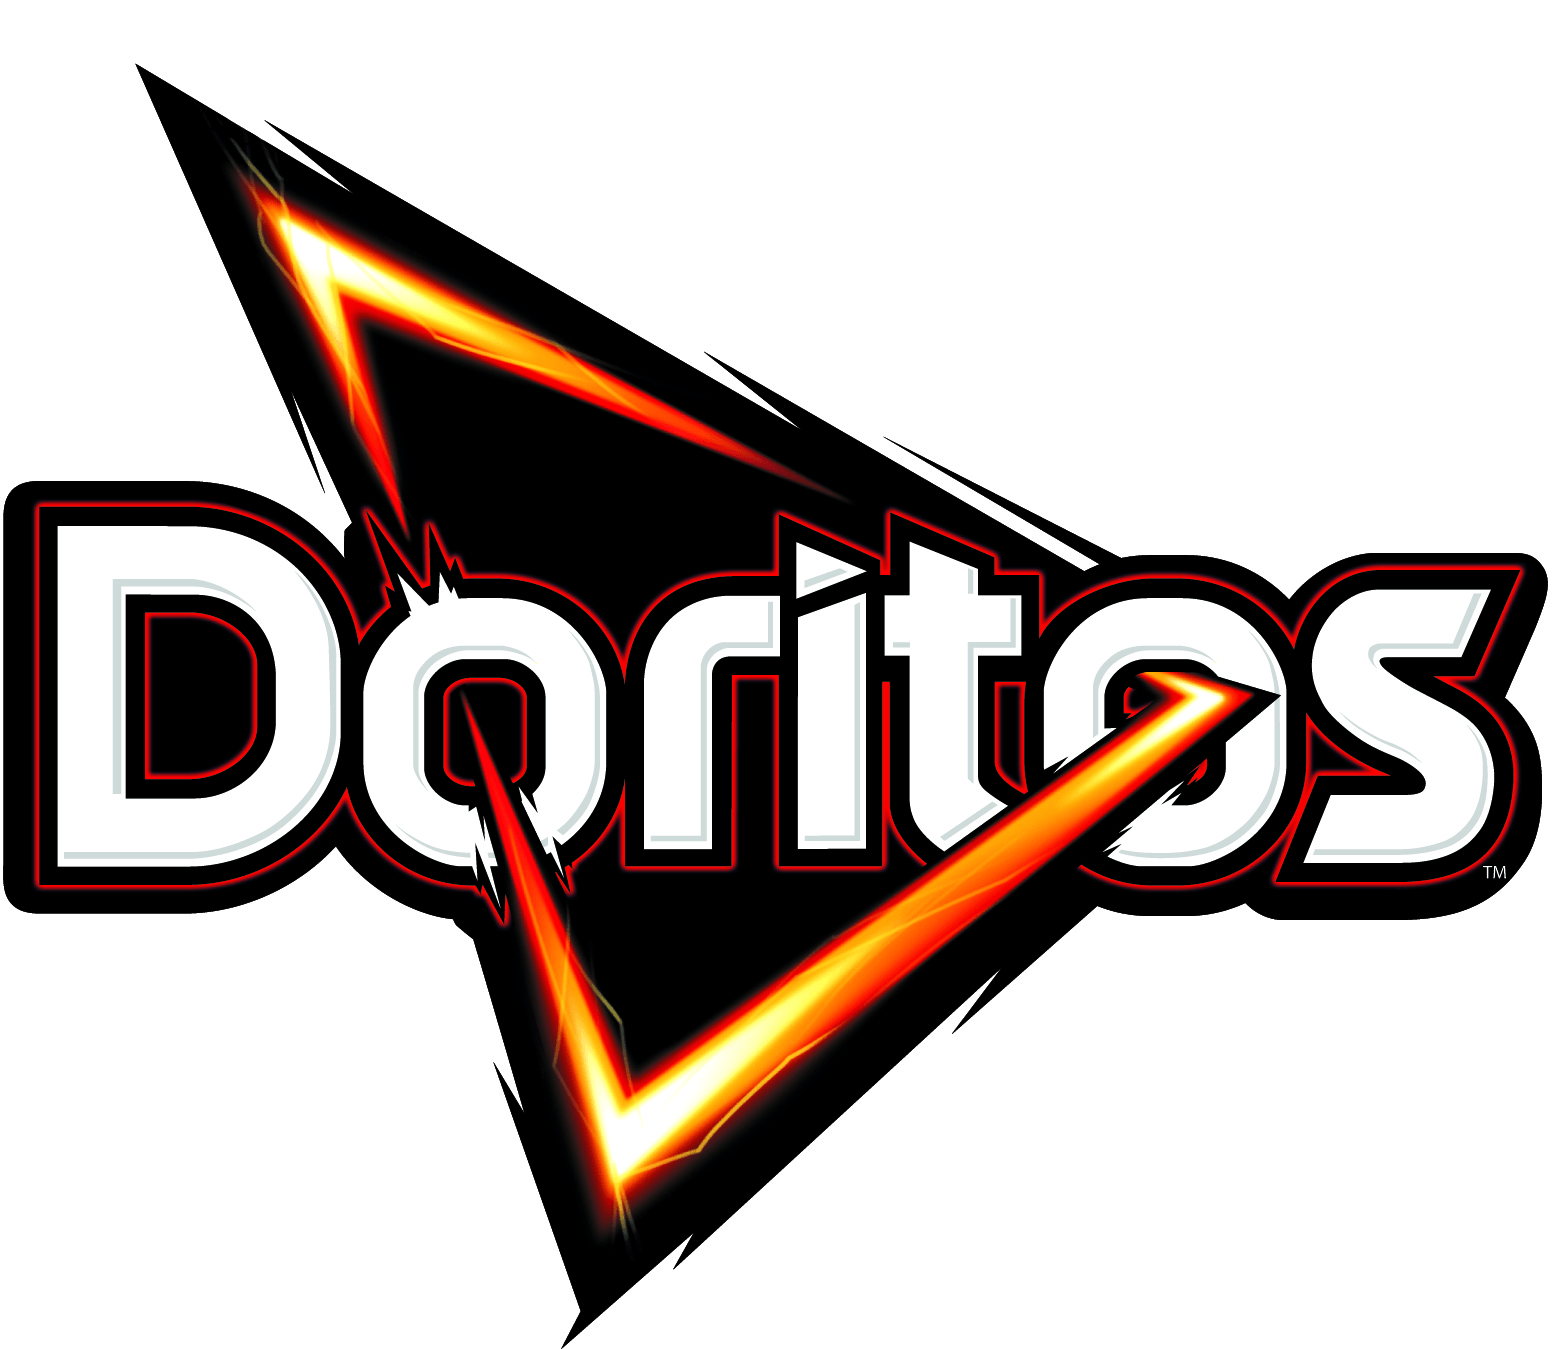 Doritos Logo - Image - New Doritos Logo.png | Logopedia | FANDOM powered by Wikia